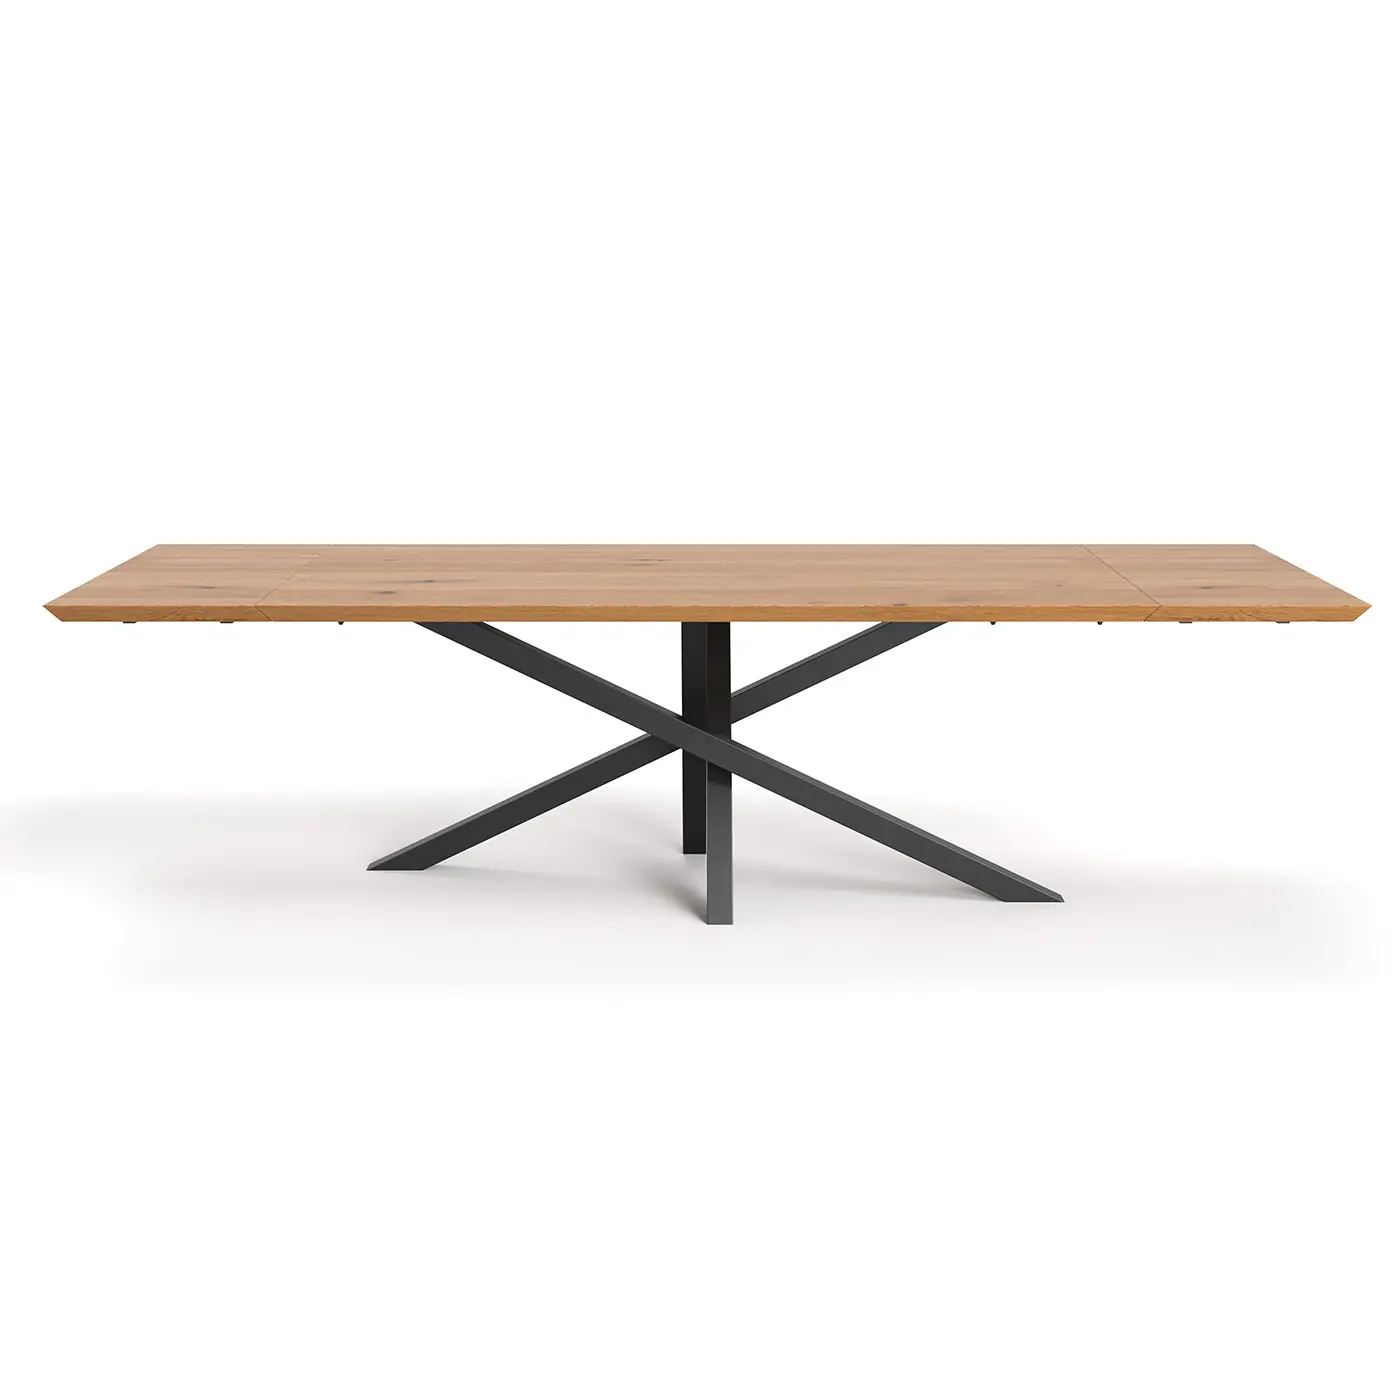 Tisch Slant mit Verl盲ngerungen 50 cm